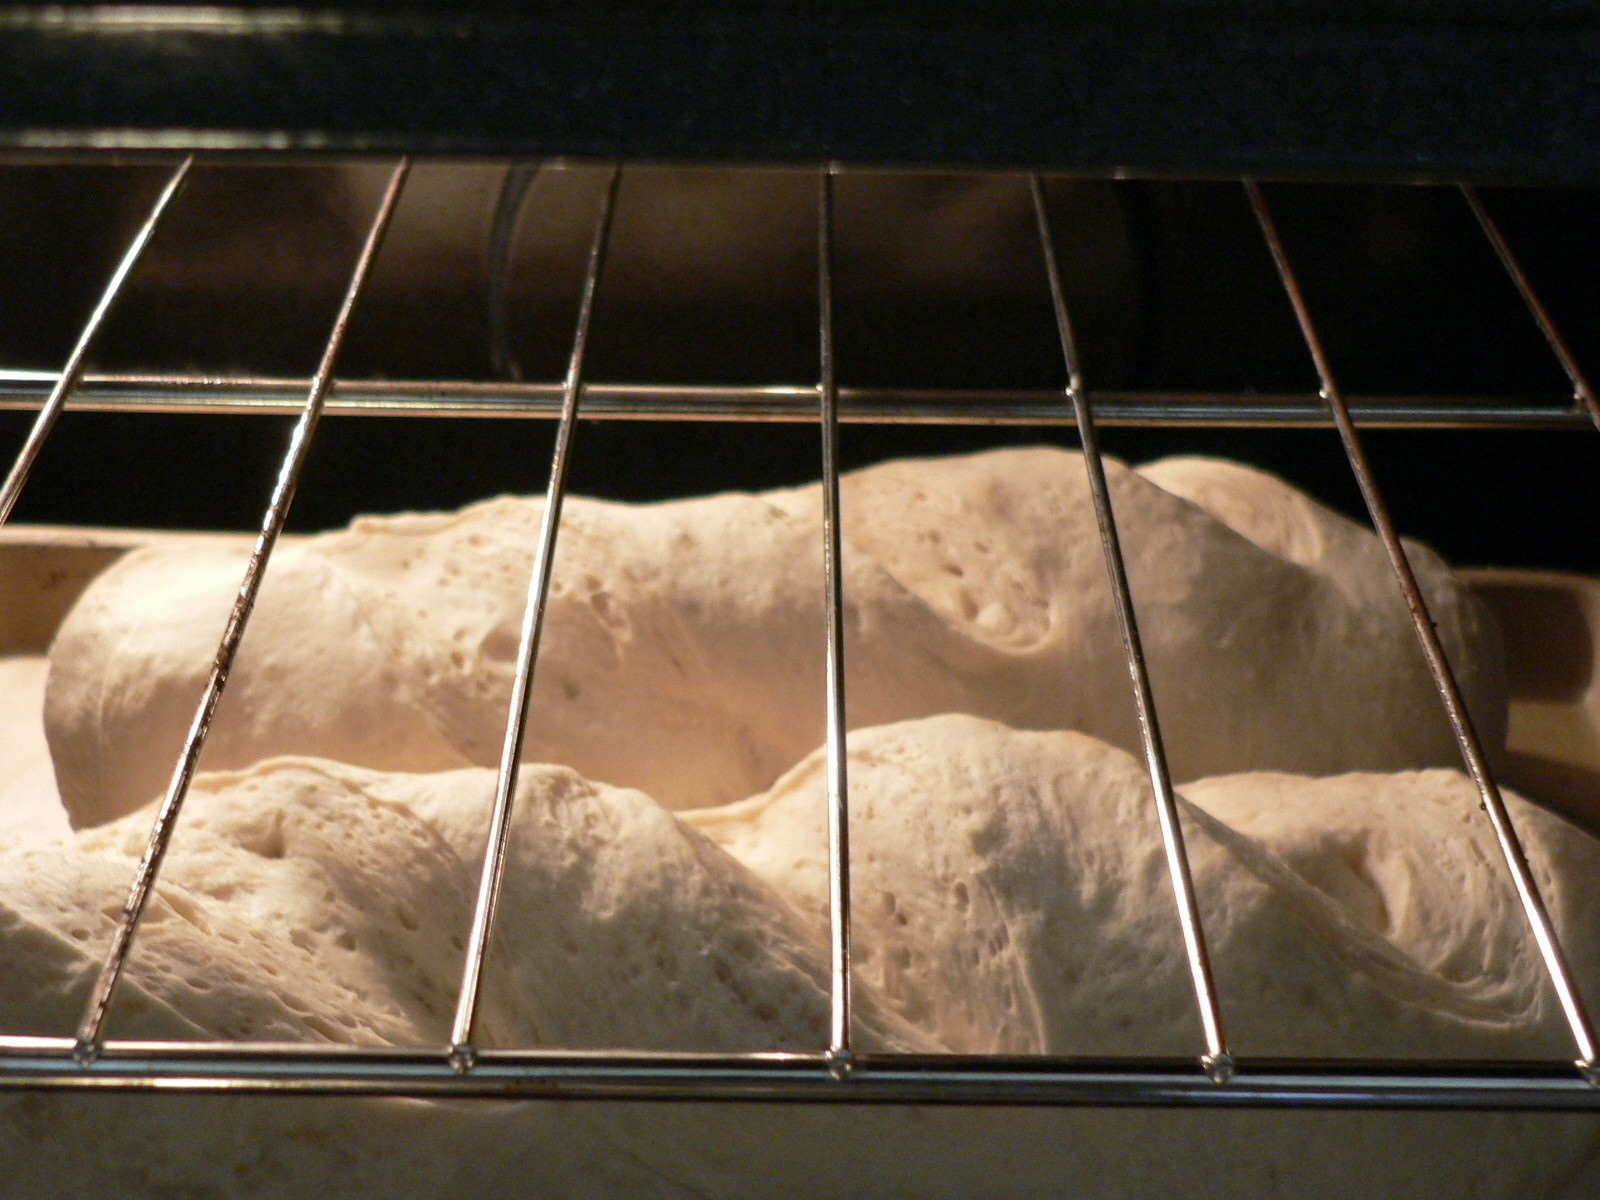 [bread.jpg]